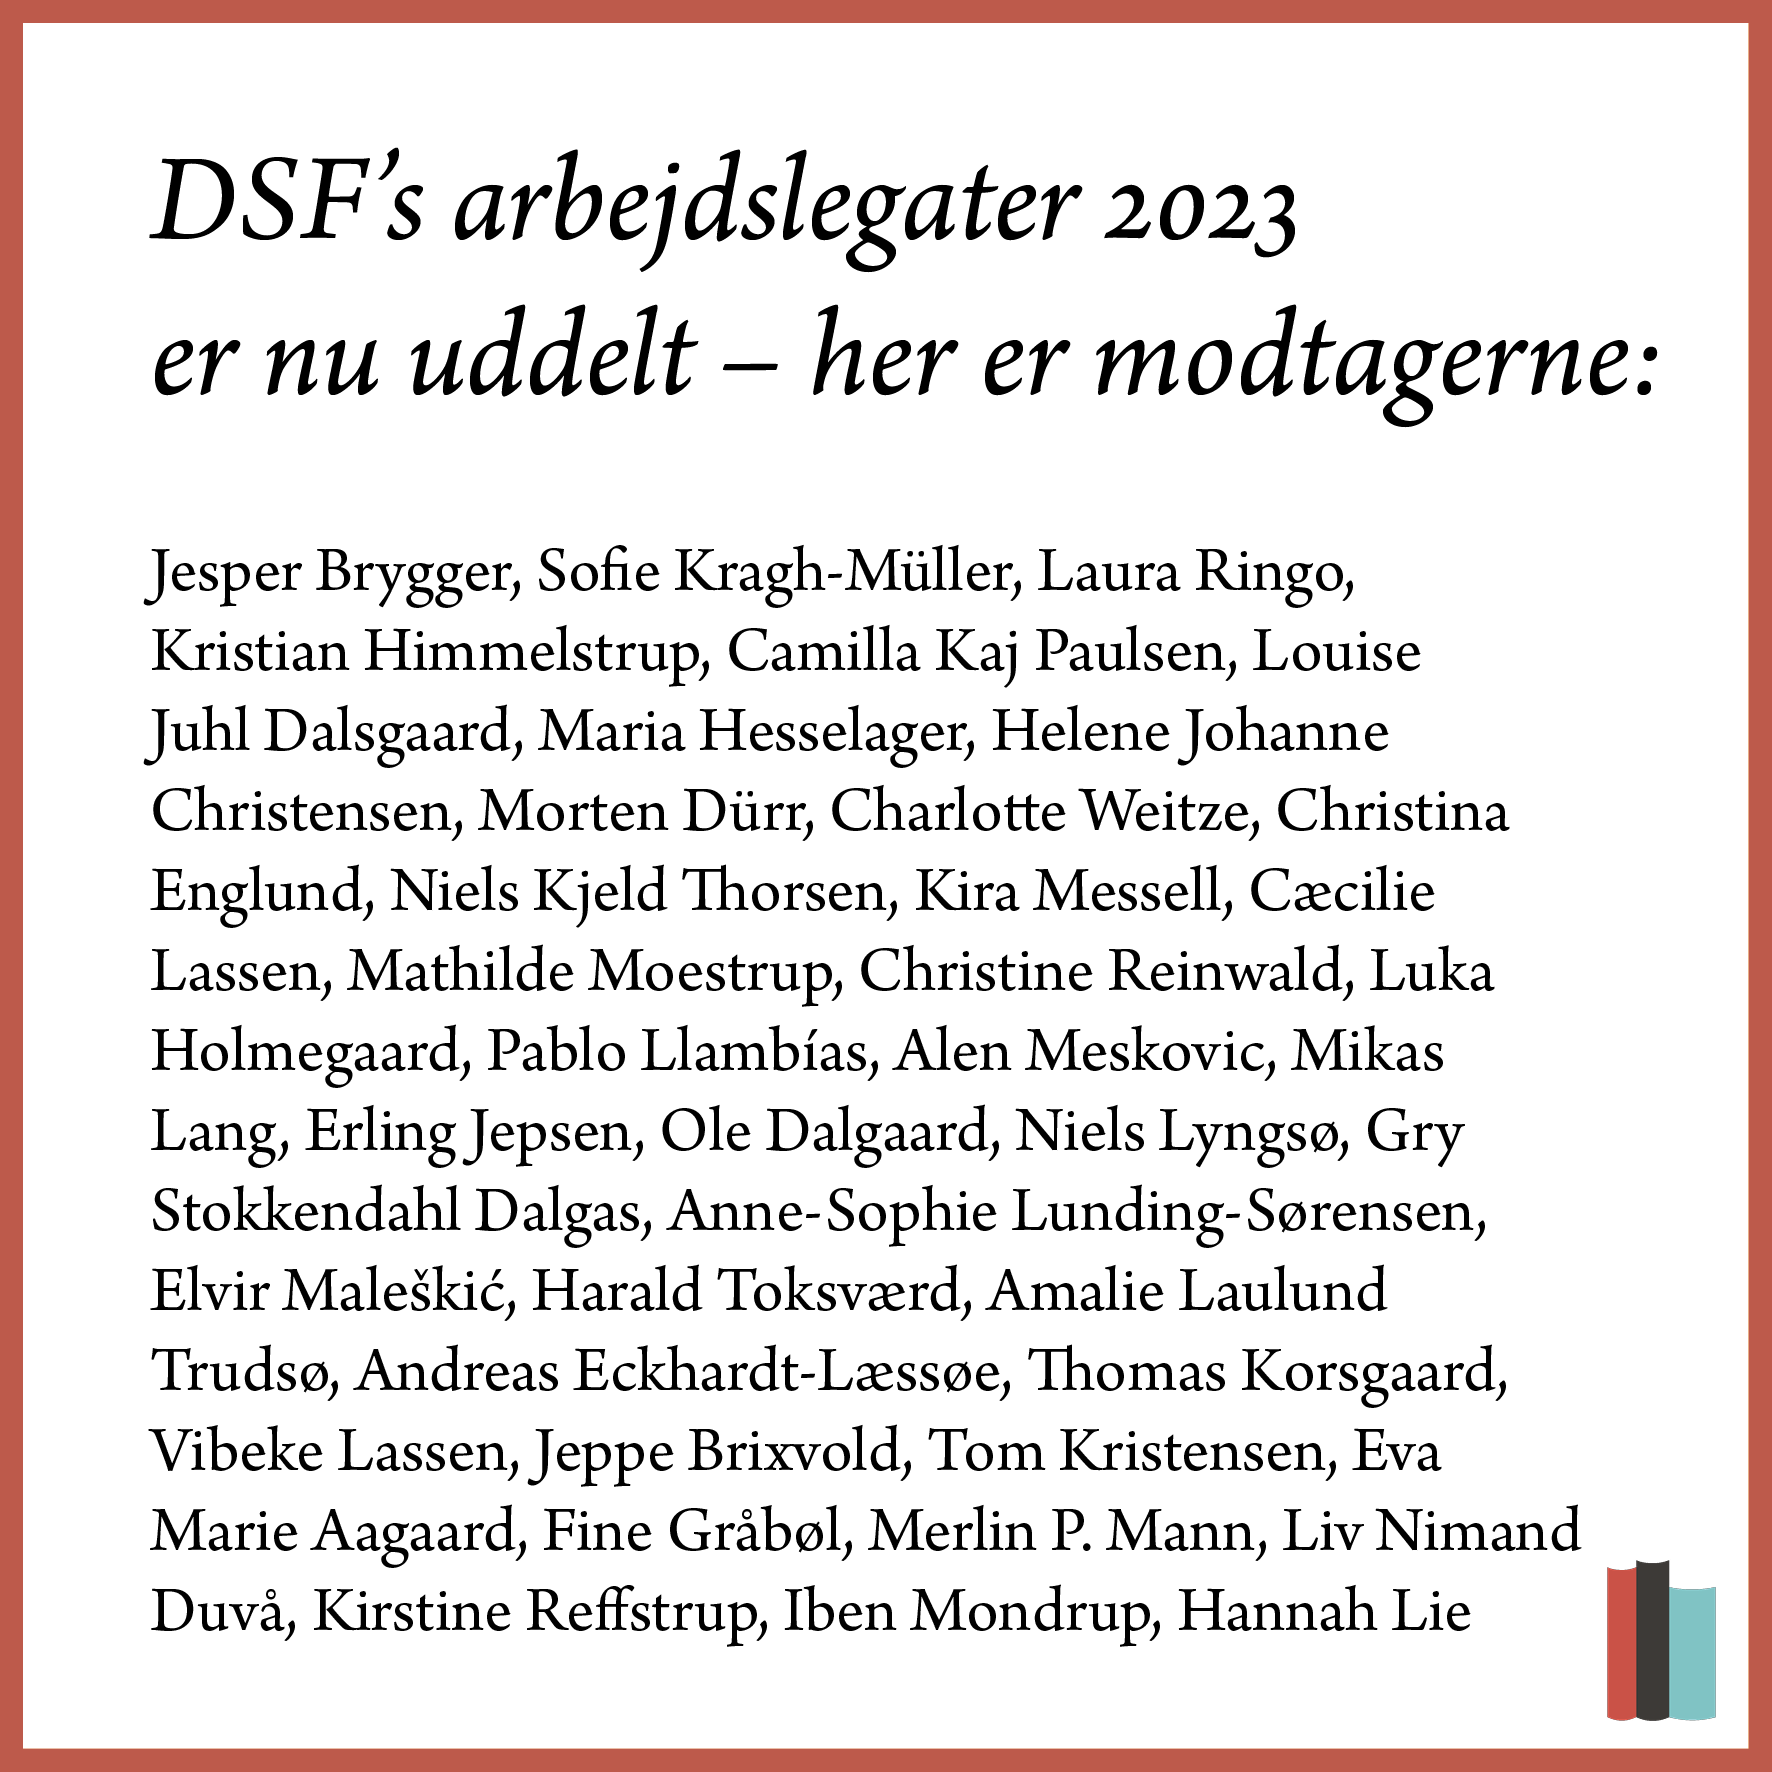 Danske Skønlitterære Forfatteres arbejdslegater er nu uddelt